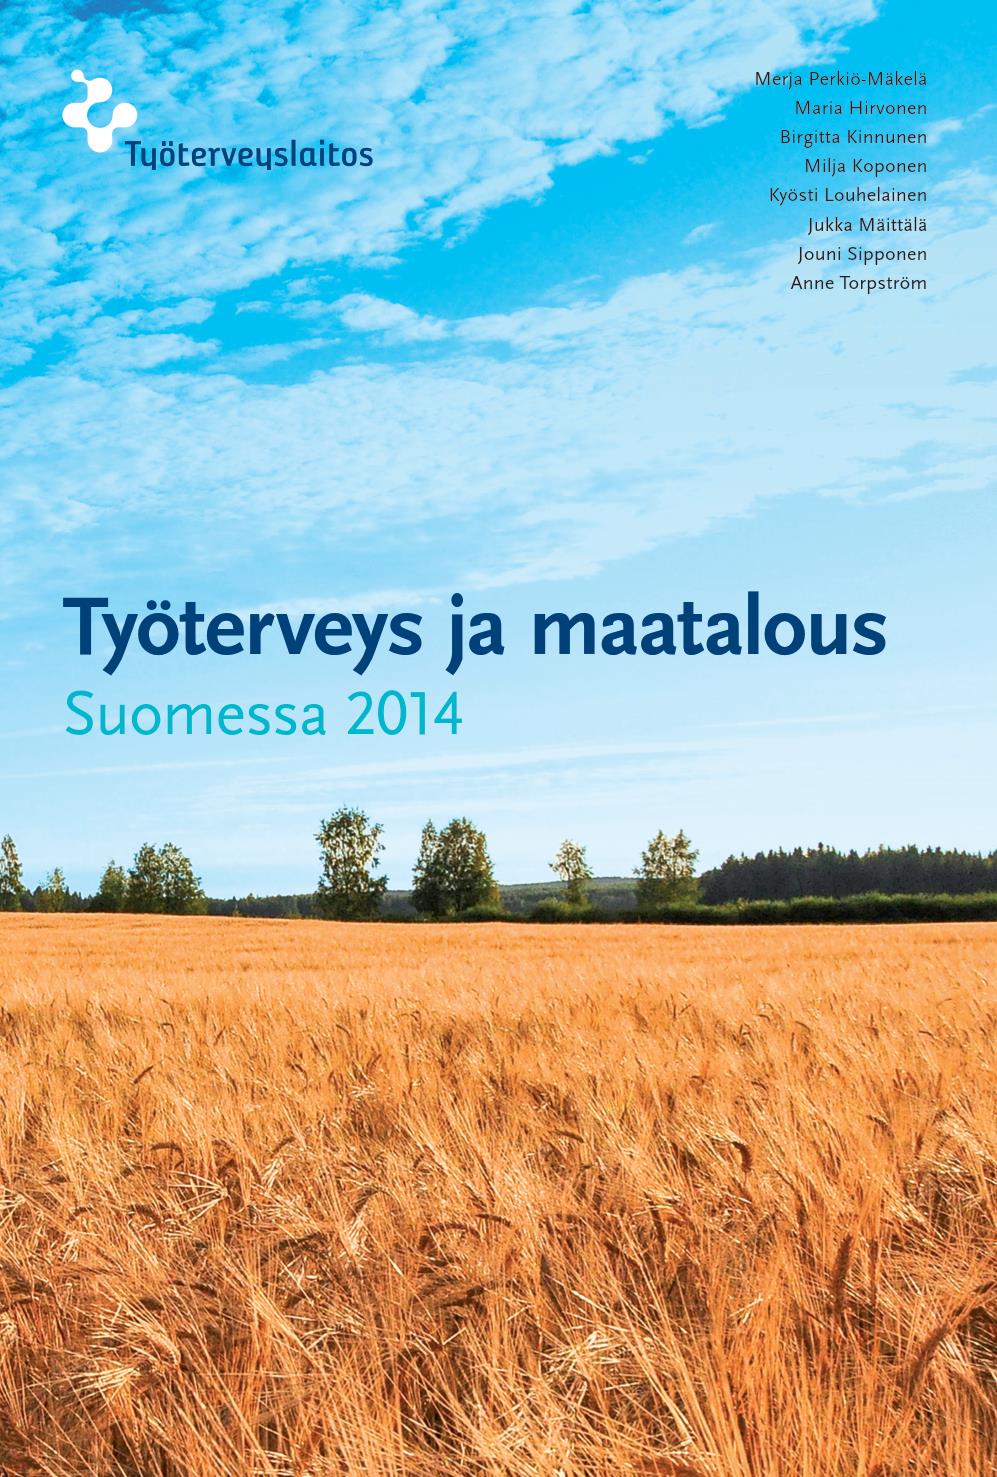 Työterveys ja maatalous Suomessa 2014 -tutkimus Merja Perkiö-Mäkelä, Jouni Sipponen, Jukka Mäittälä, Maria Hirvonen, Birgitta